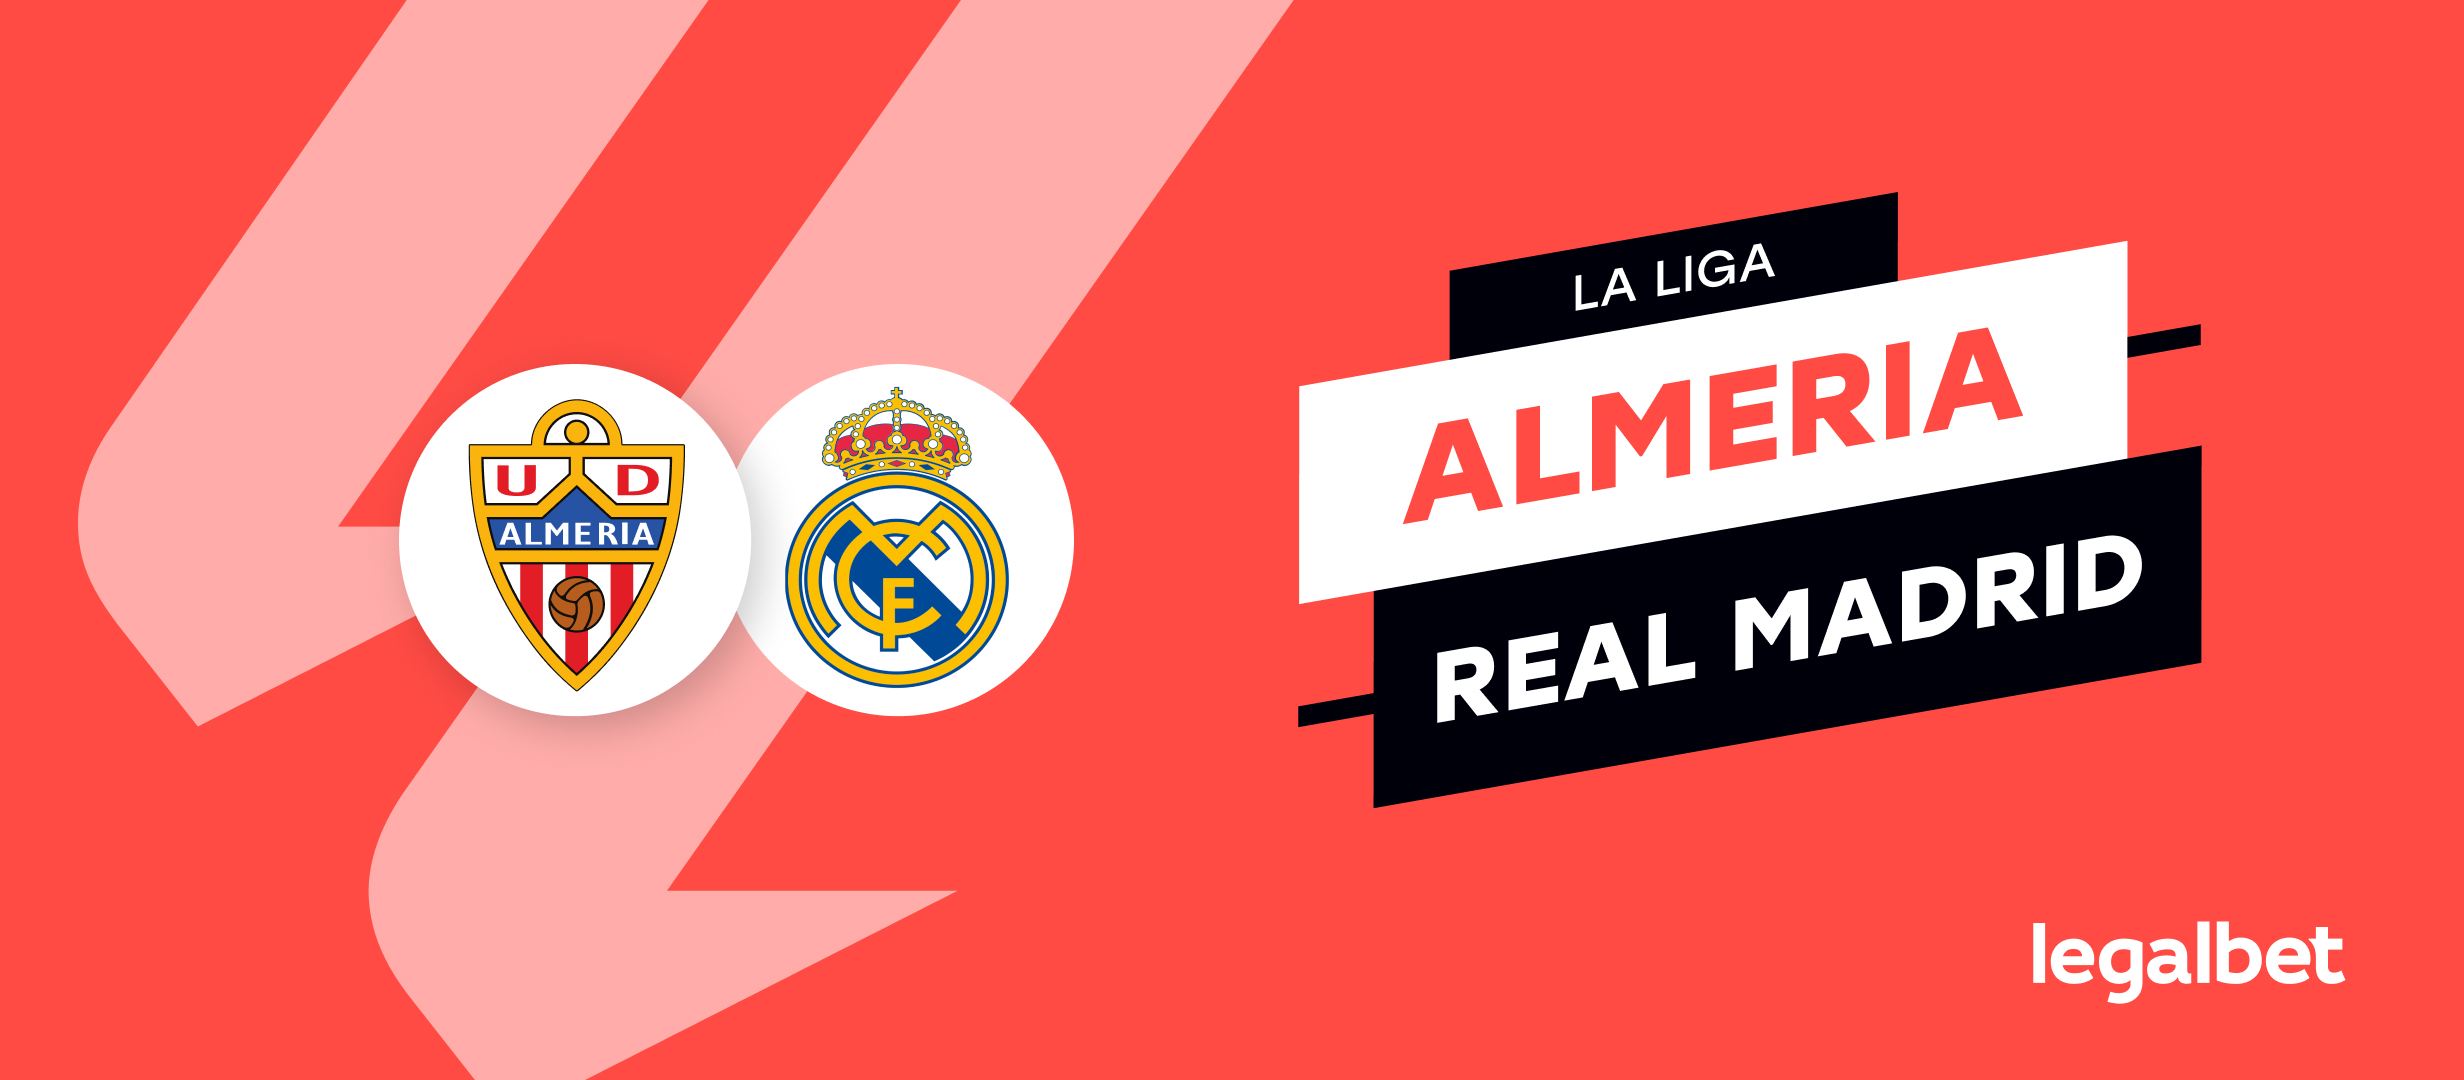 Almeria vs Real Madrid – cote la pariuri, ponturi si informatii